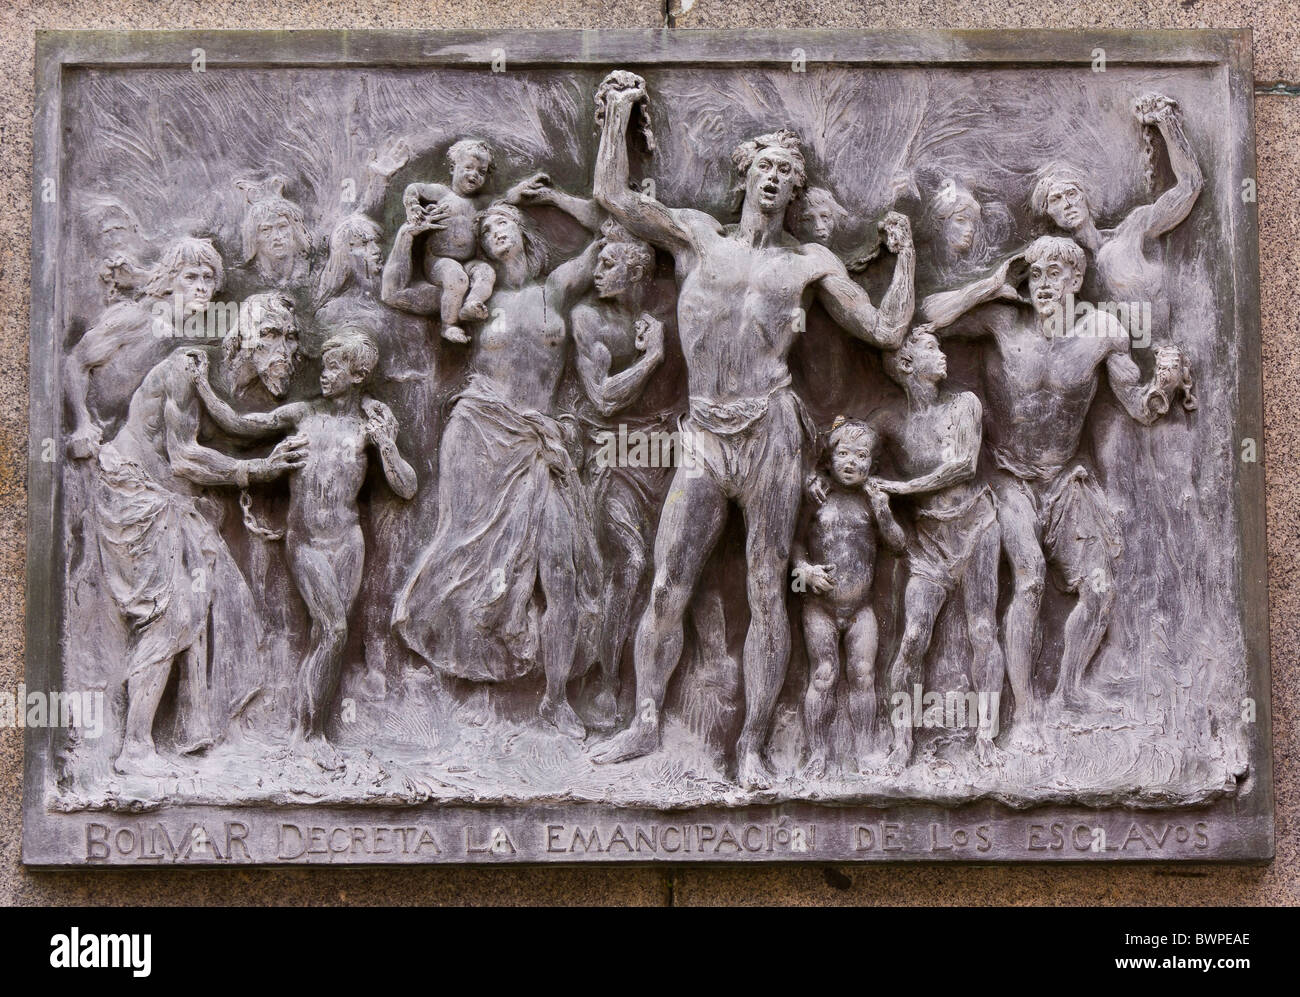 La ville de Panama, Panama - sculpture Bas-relief de Simon Bolivar et la libération des esclaves, Plaza Bolivar, dans Casco Viejo, quartier historique Banque D'Images